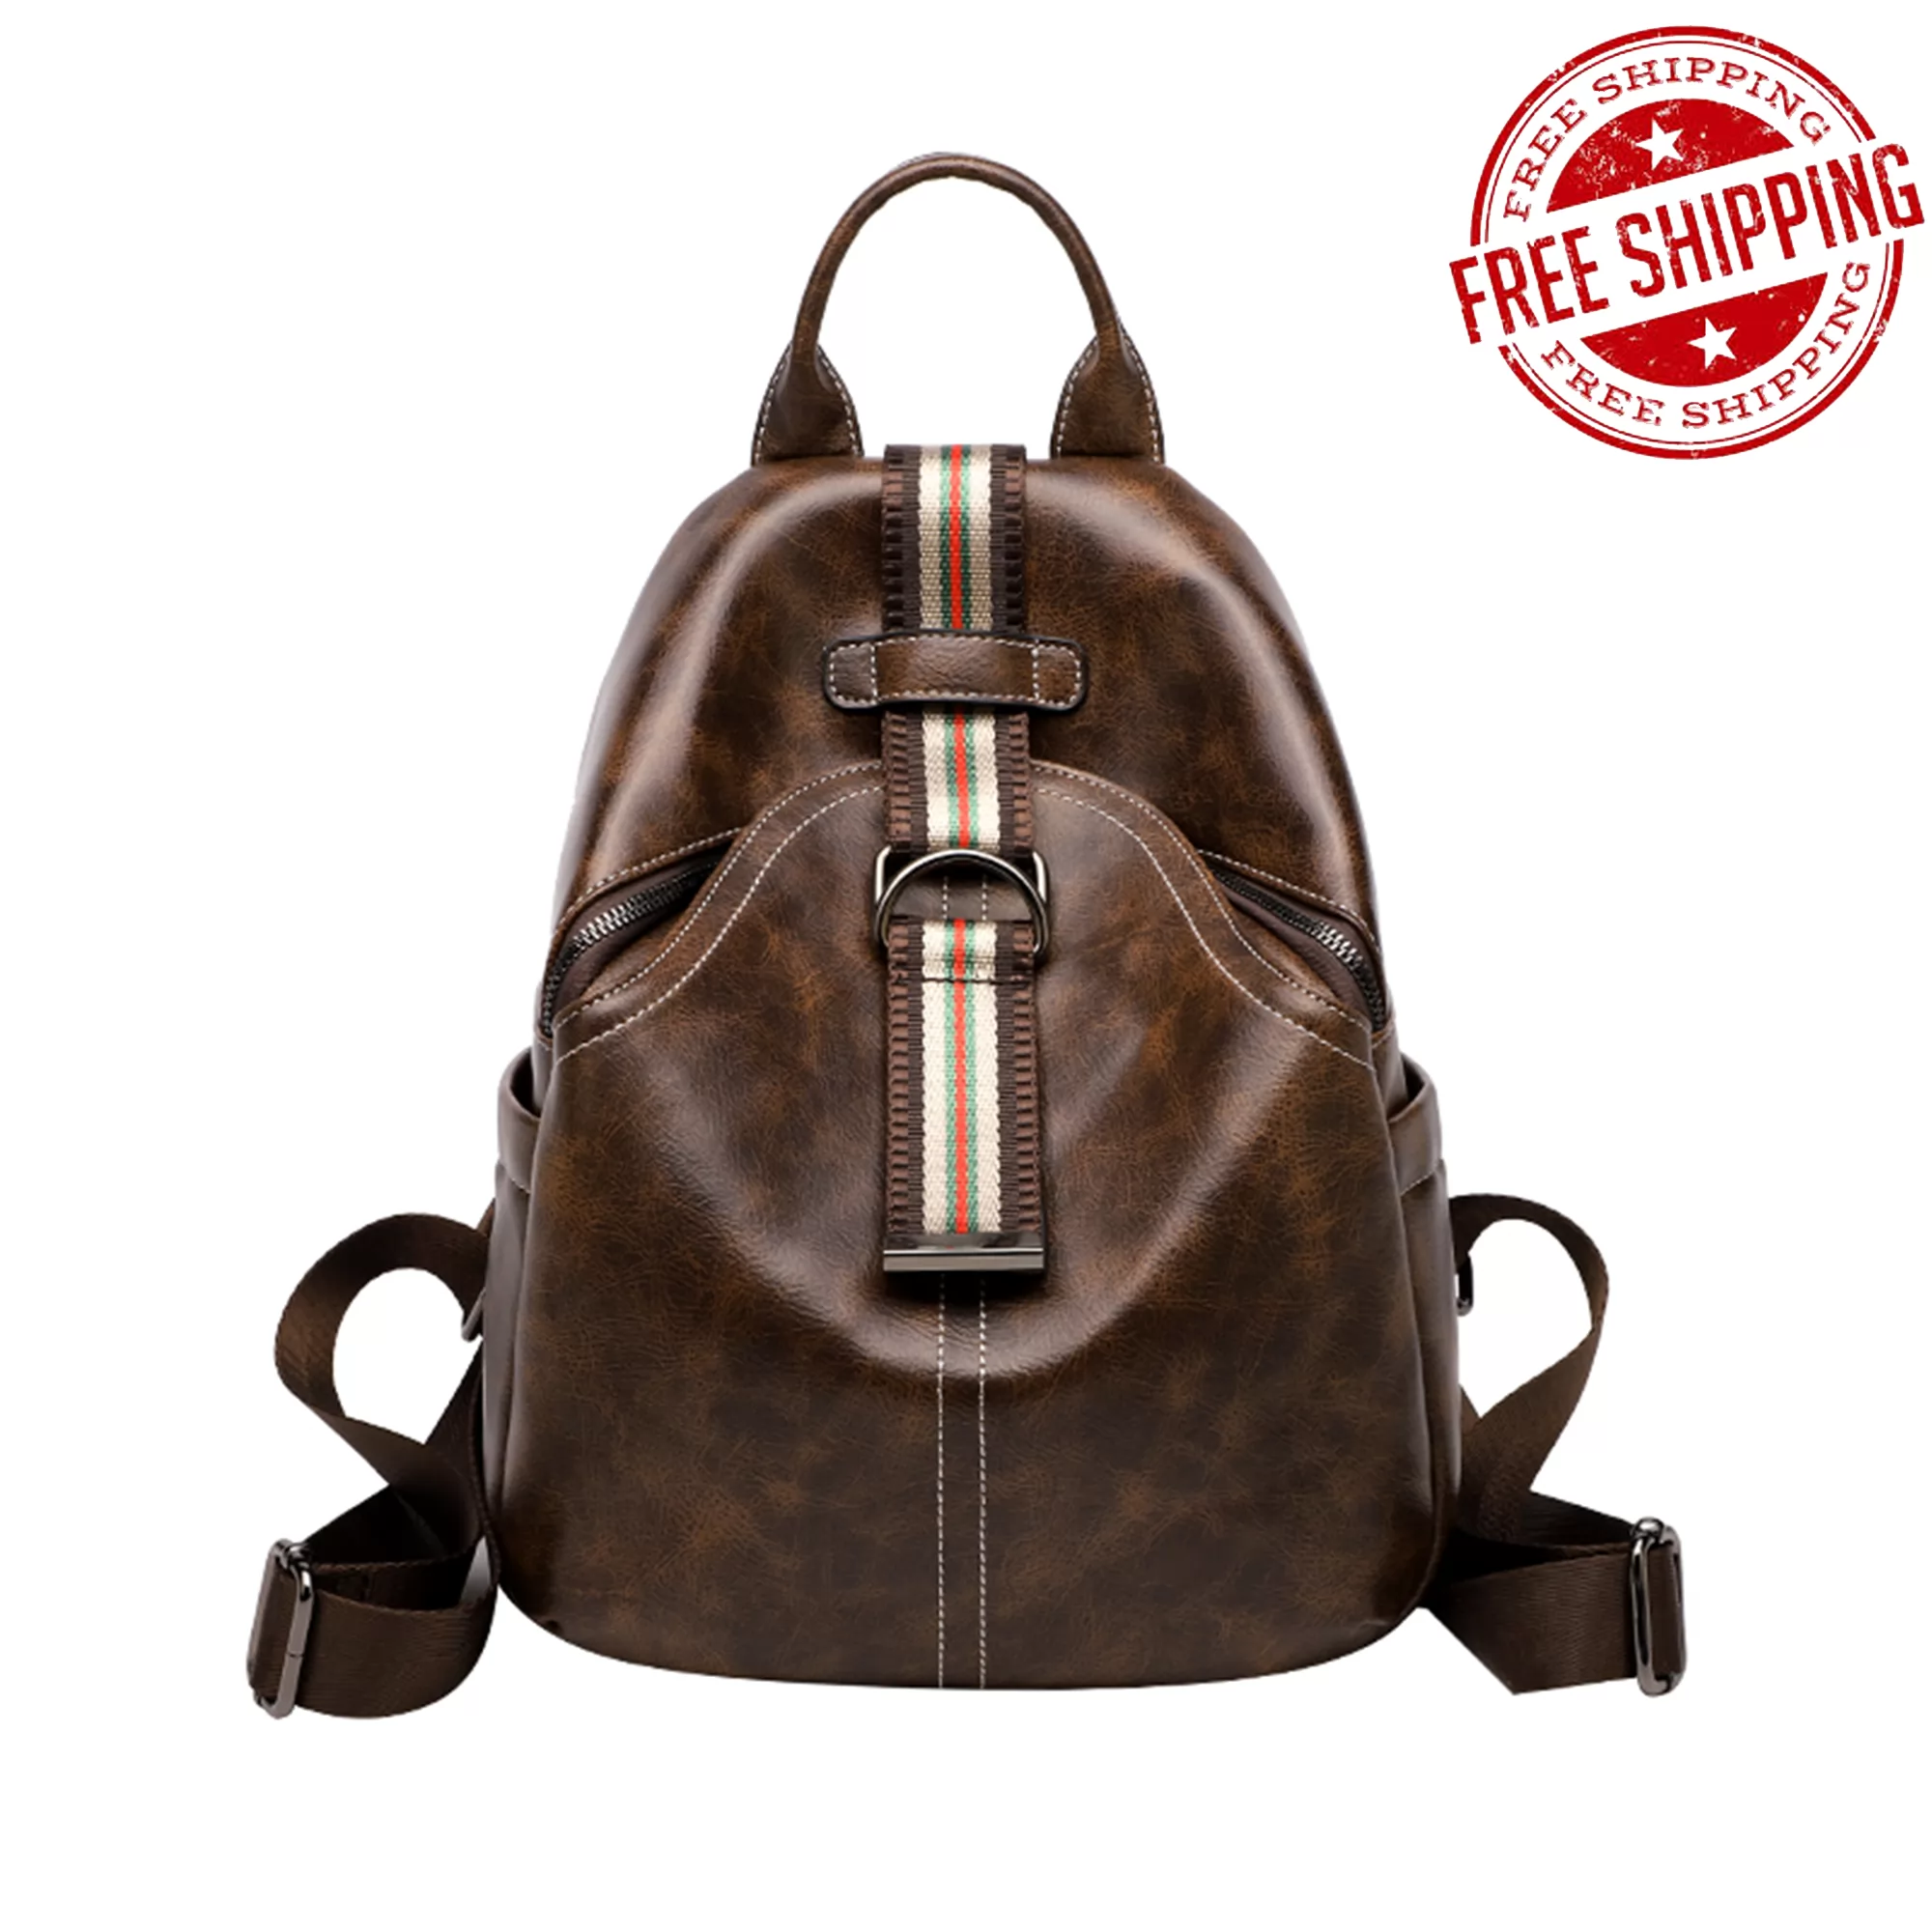 Dominivv Handbag-Shoulder Bags-Back pack - Leather bag